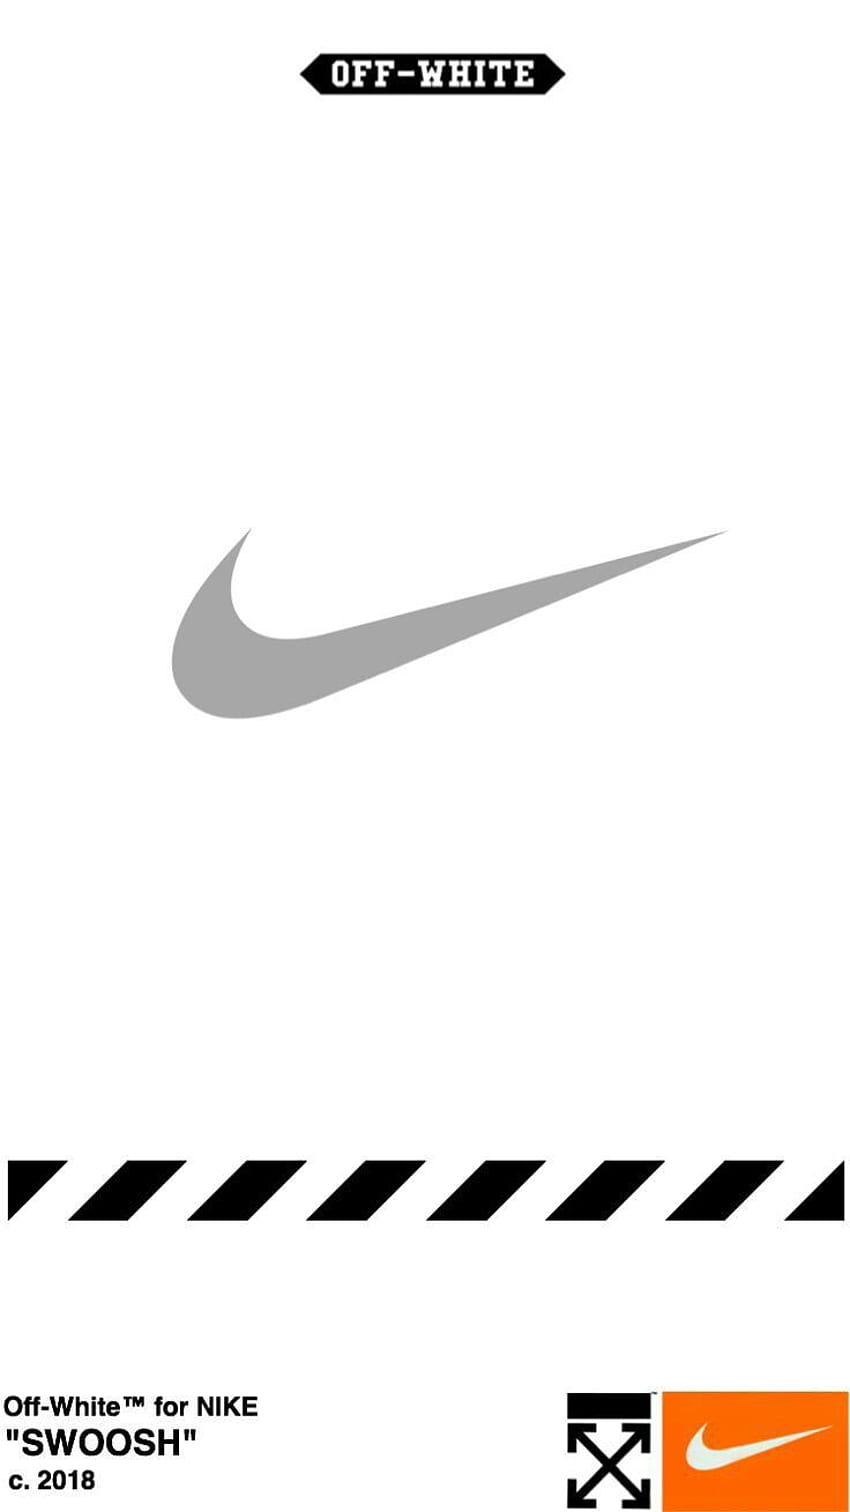 Nike: Đừng bỏ lỡ bức hình đẹp mắt về sản phẩm mới nhất của Nike. Hãy khám phá nhiều loại giày thể thao với thiết kế ấn tượng cùng chất liệu cao cấp. Bạn sẽ thật sự bị cuốn hút bởi phong cách thời trang đẳng cấp và chất lượng của sản phẩm Nike.